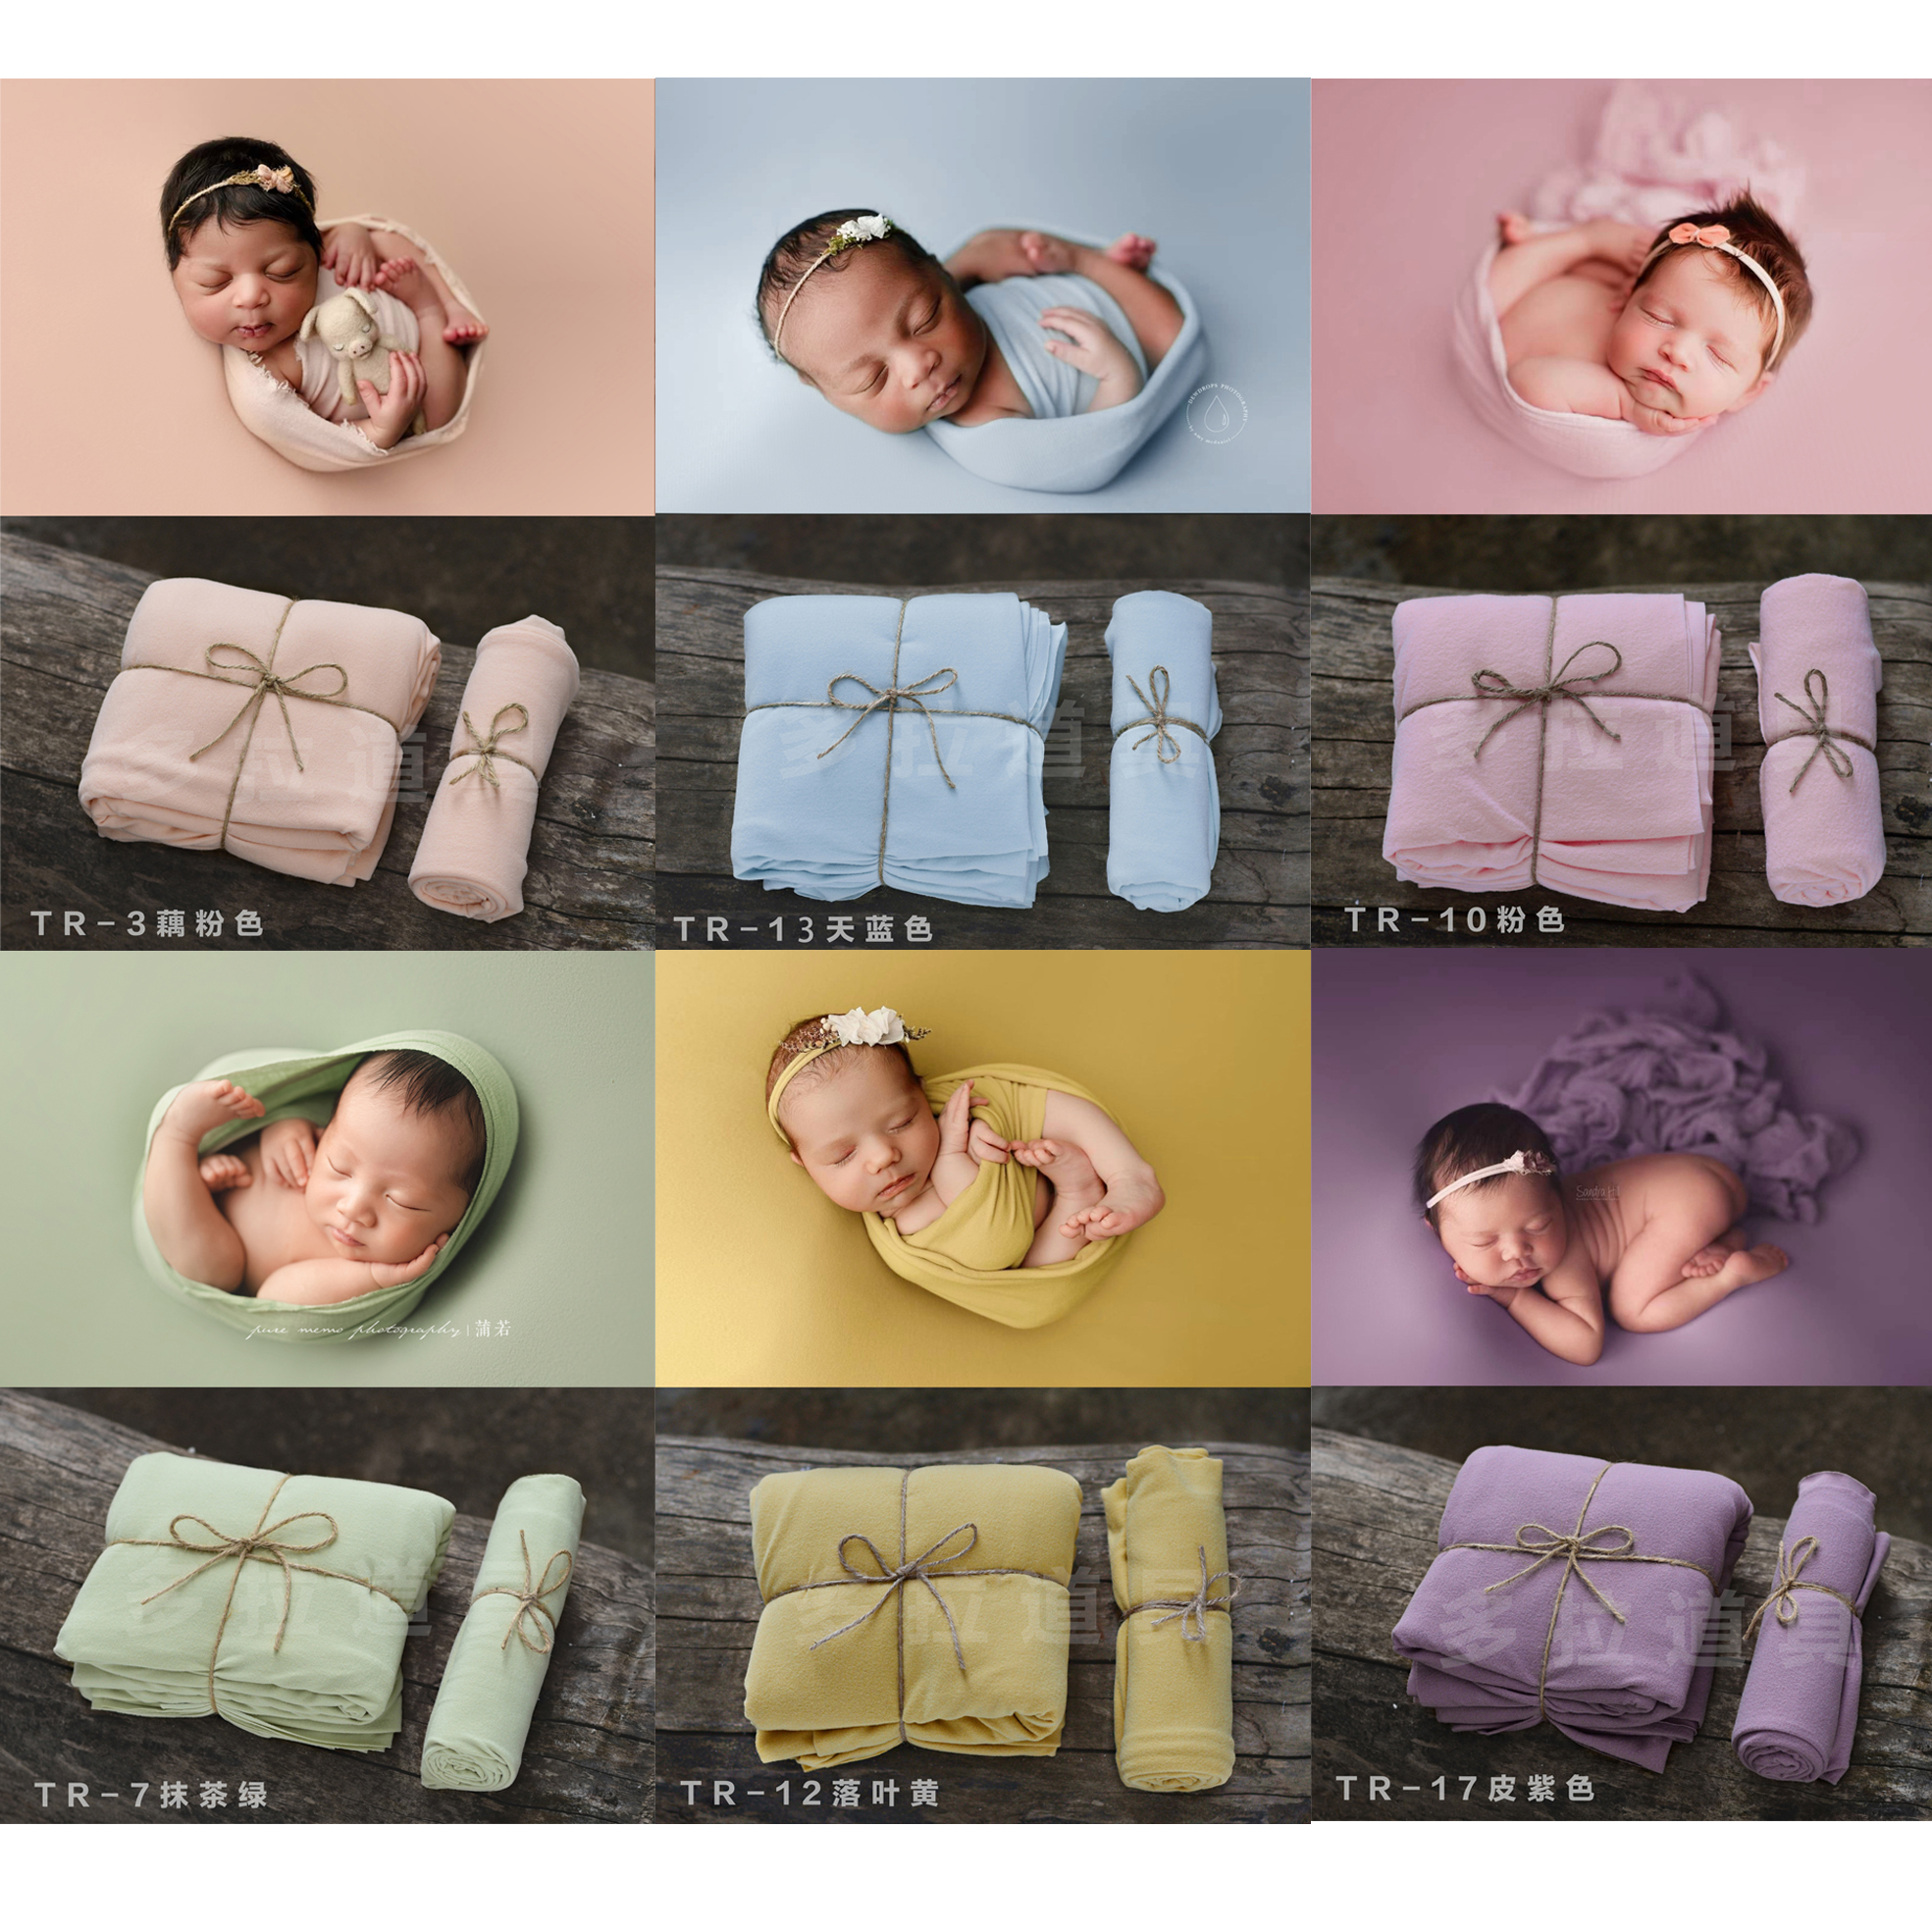 满月拍照道具婴儿宝宝百天照相道具新生儿摄影裹布背景毯子弹力布